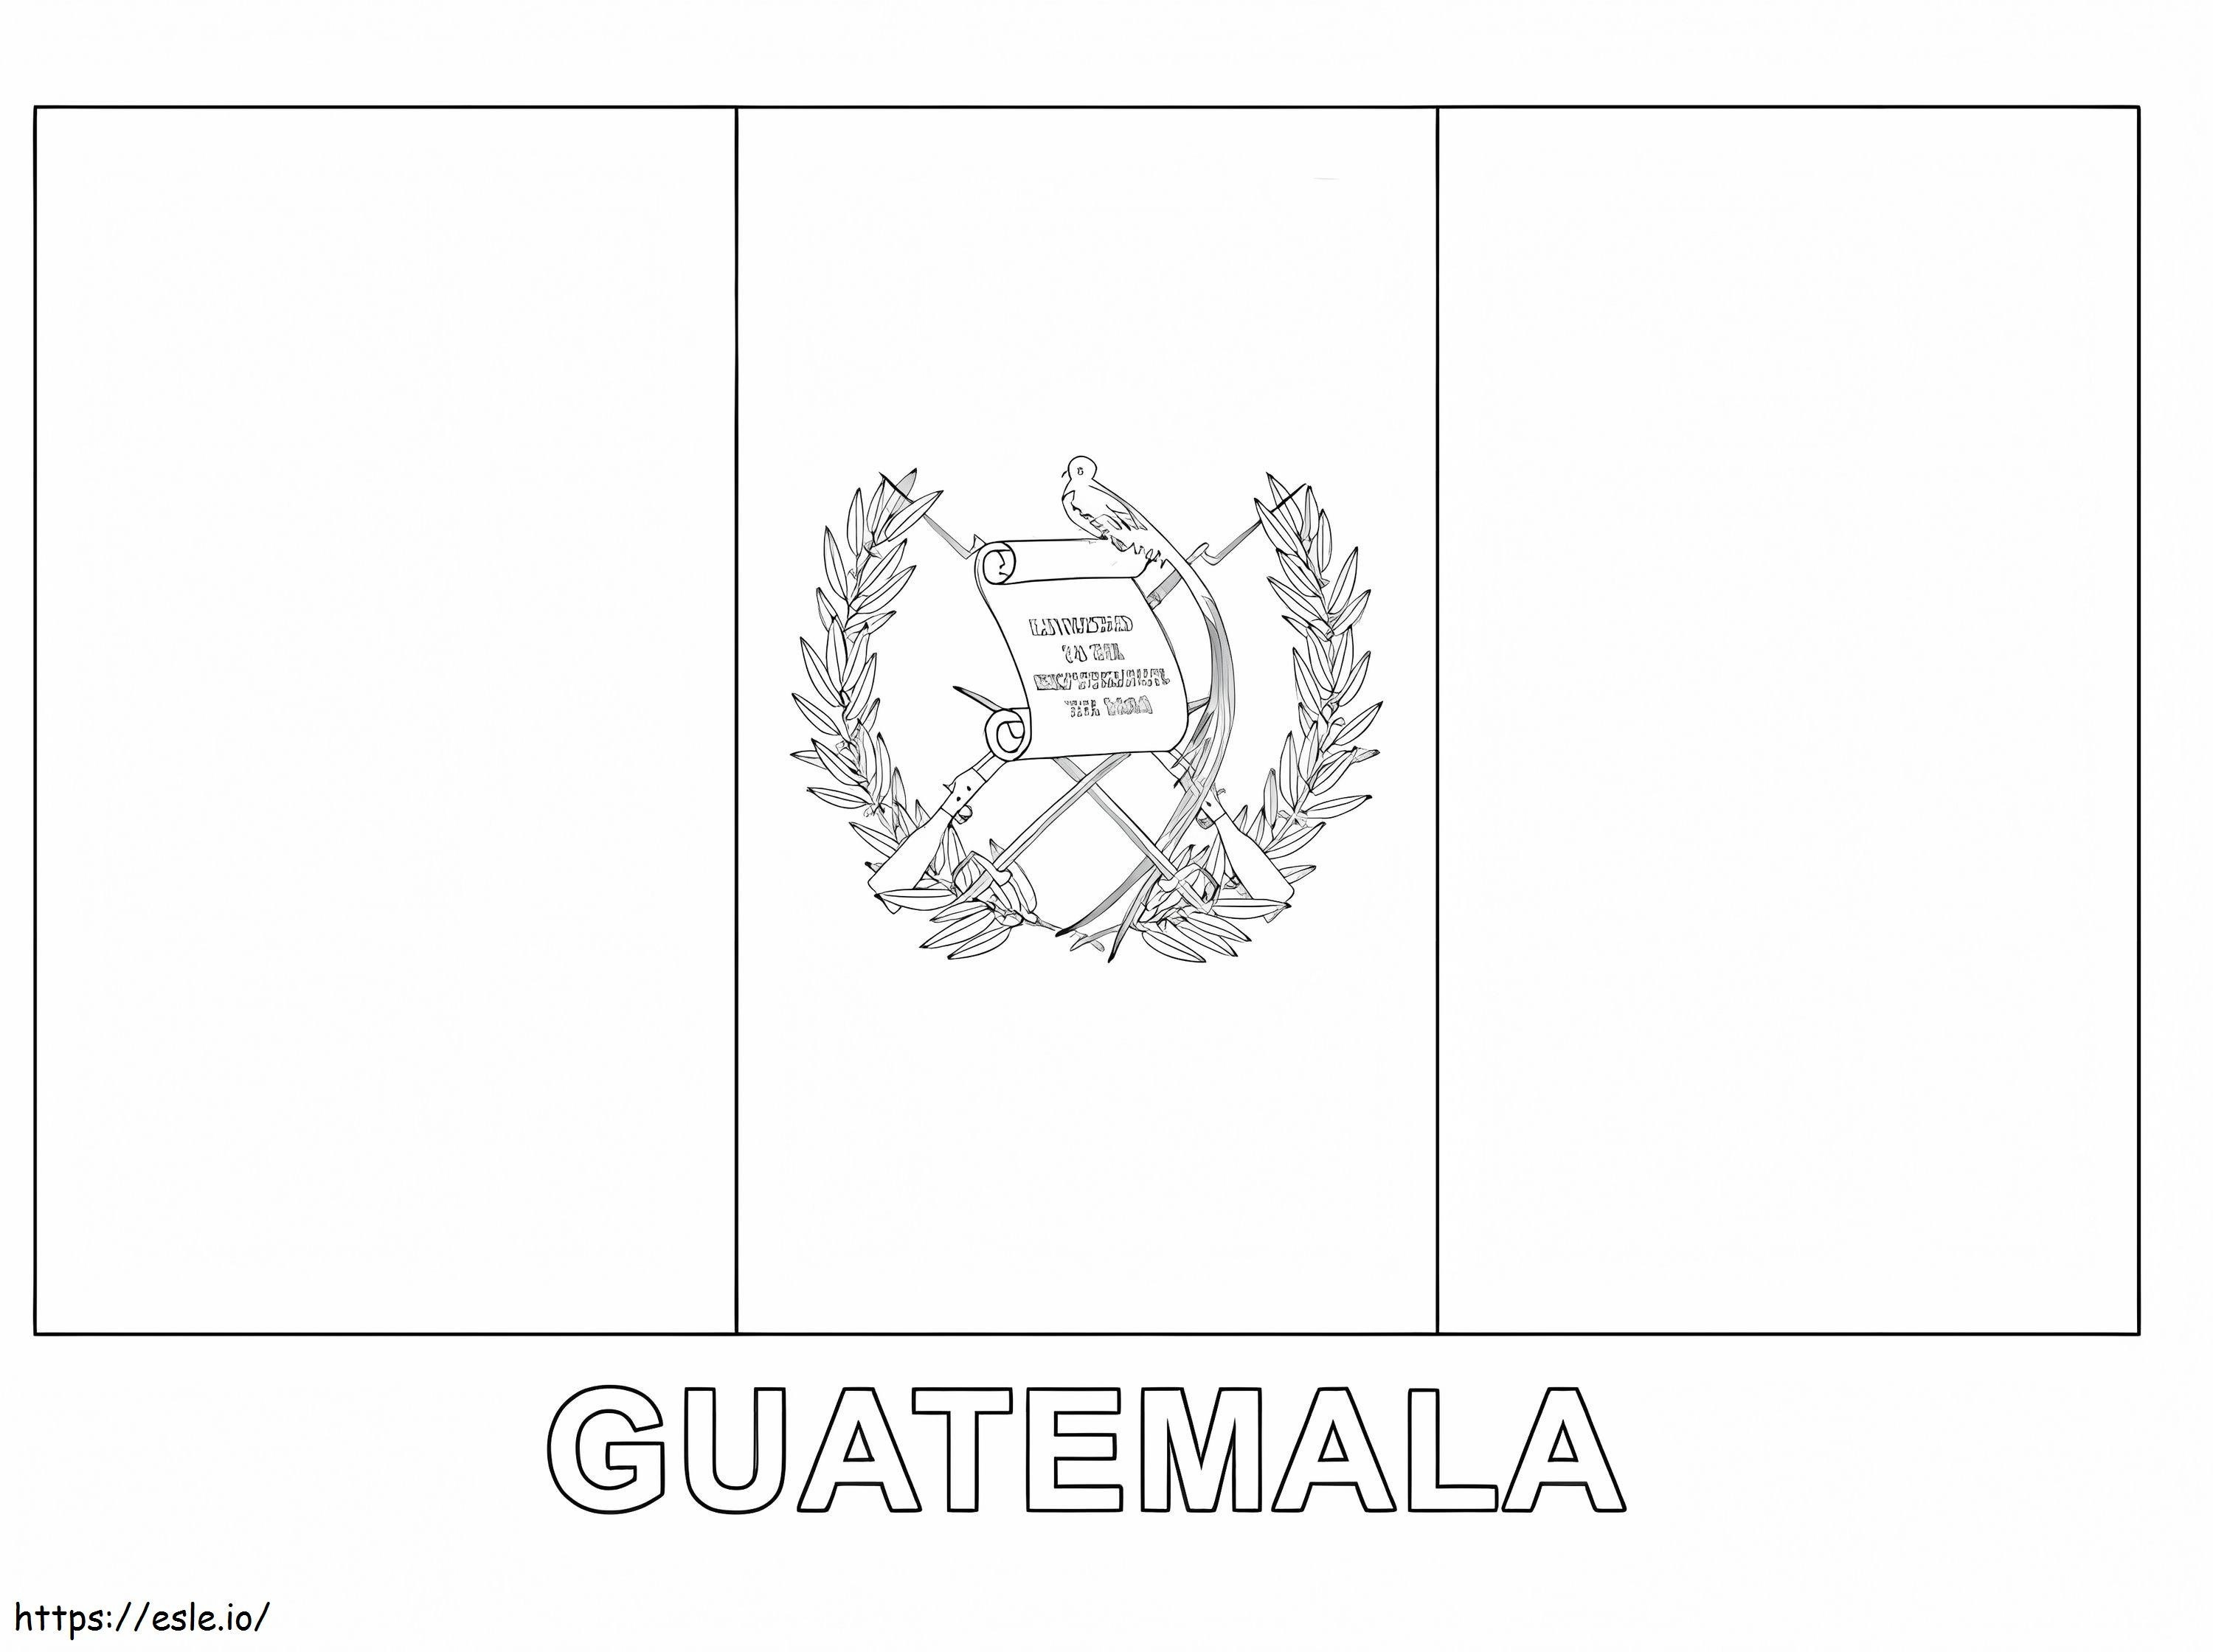 Bandiera del Guatemala da colorare